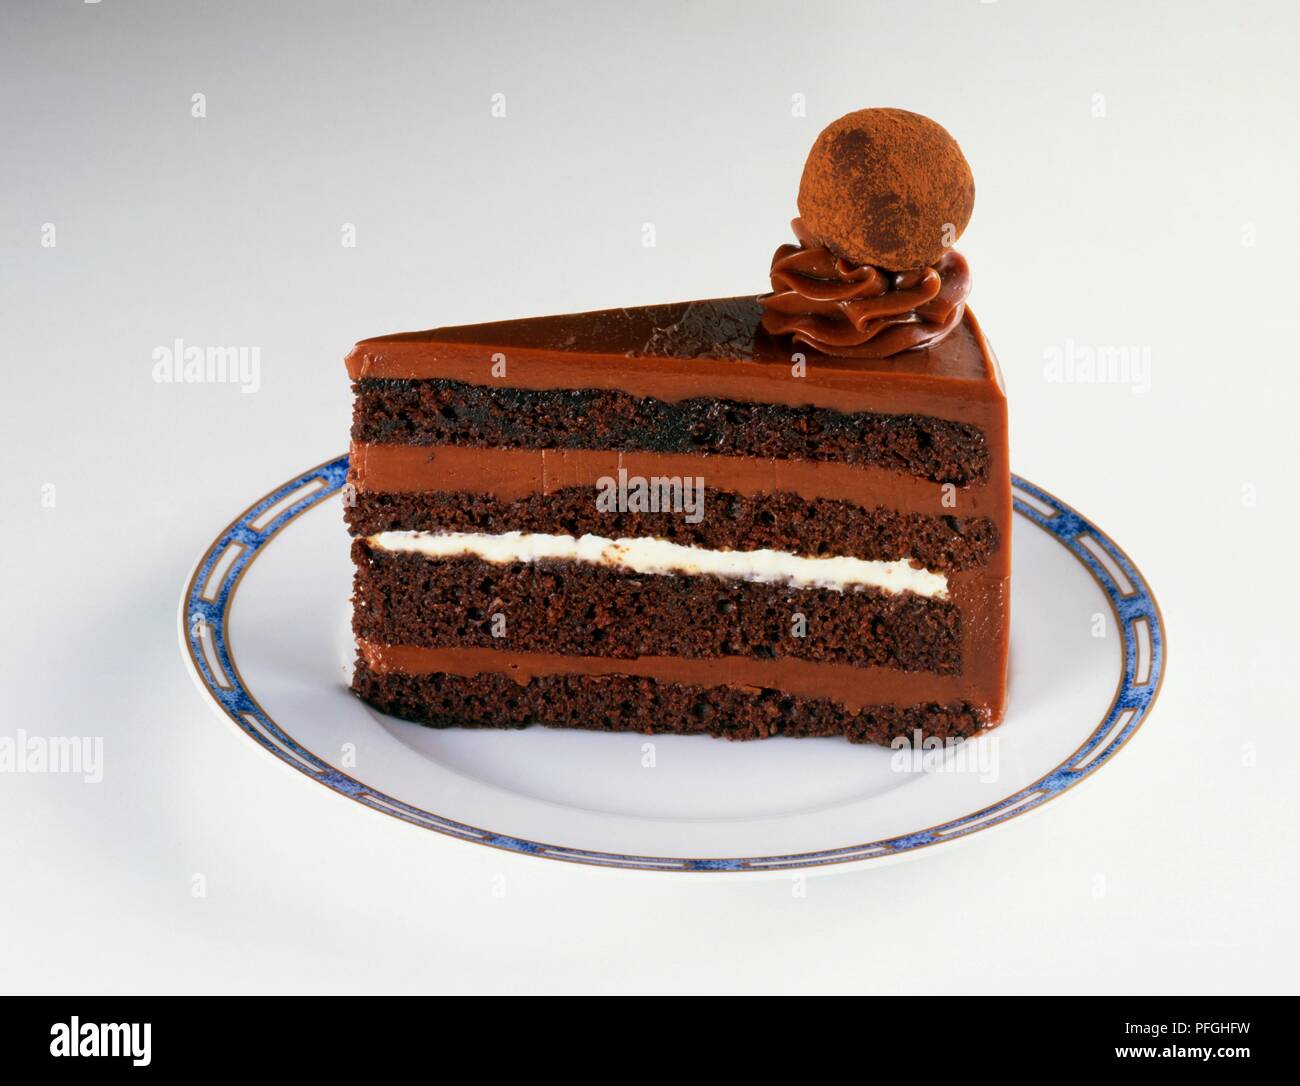 Tranche de gâteau truffe au chocolat sur la plaque Banque D'Images